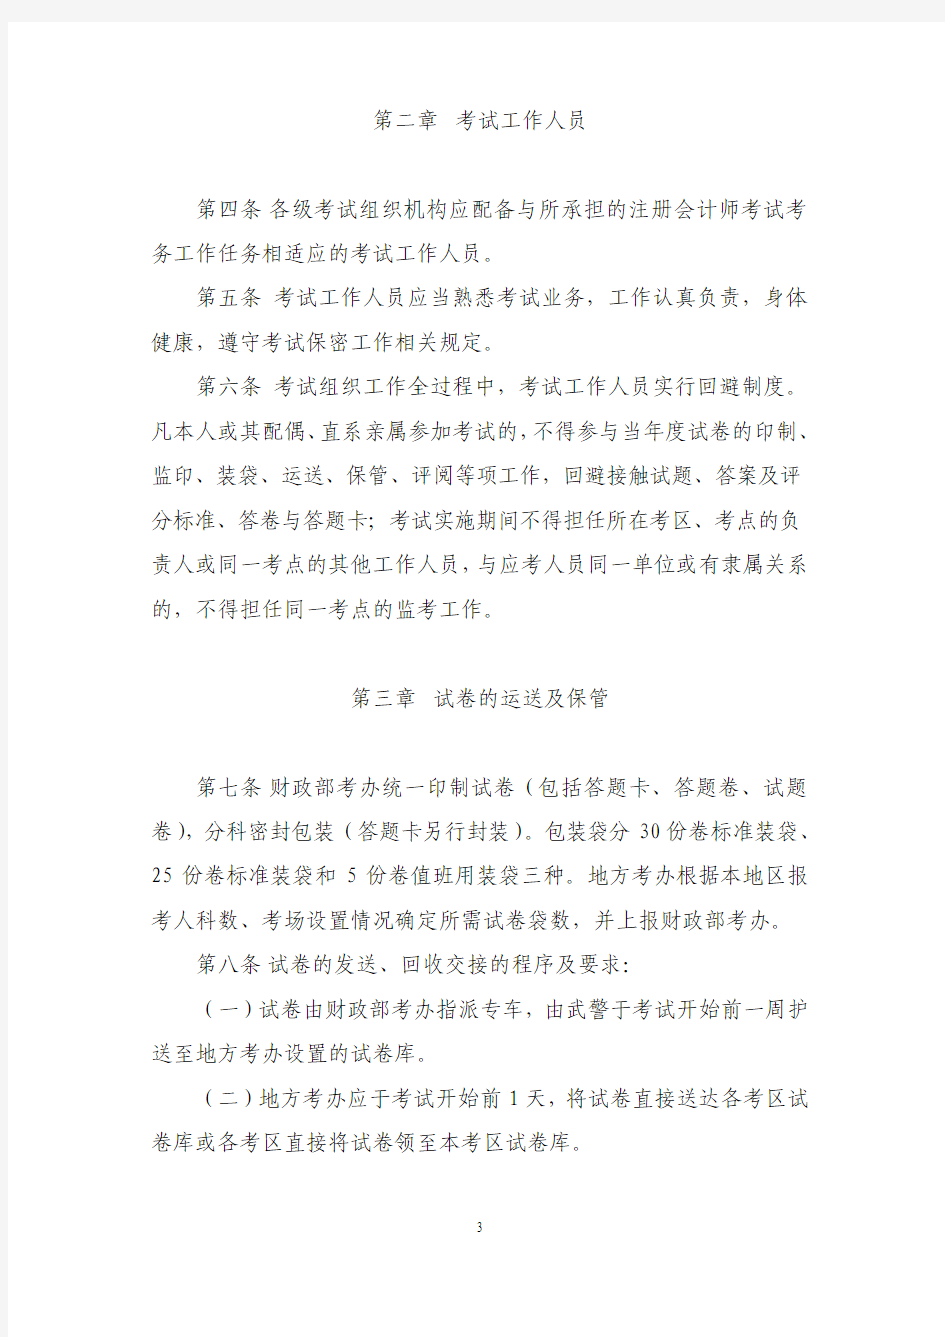 务工作规则 - 安徽省注册会计师协会网站